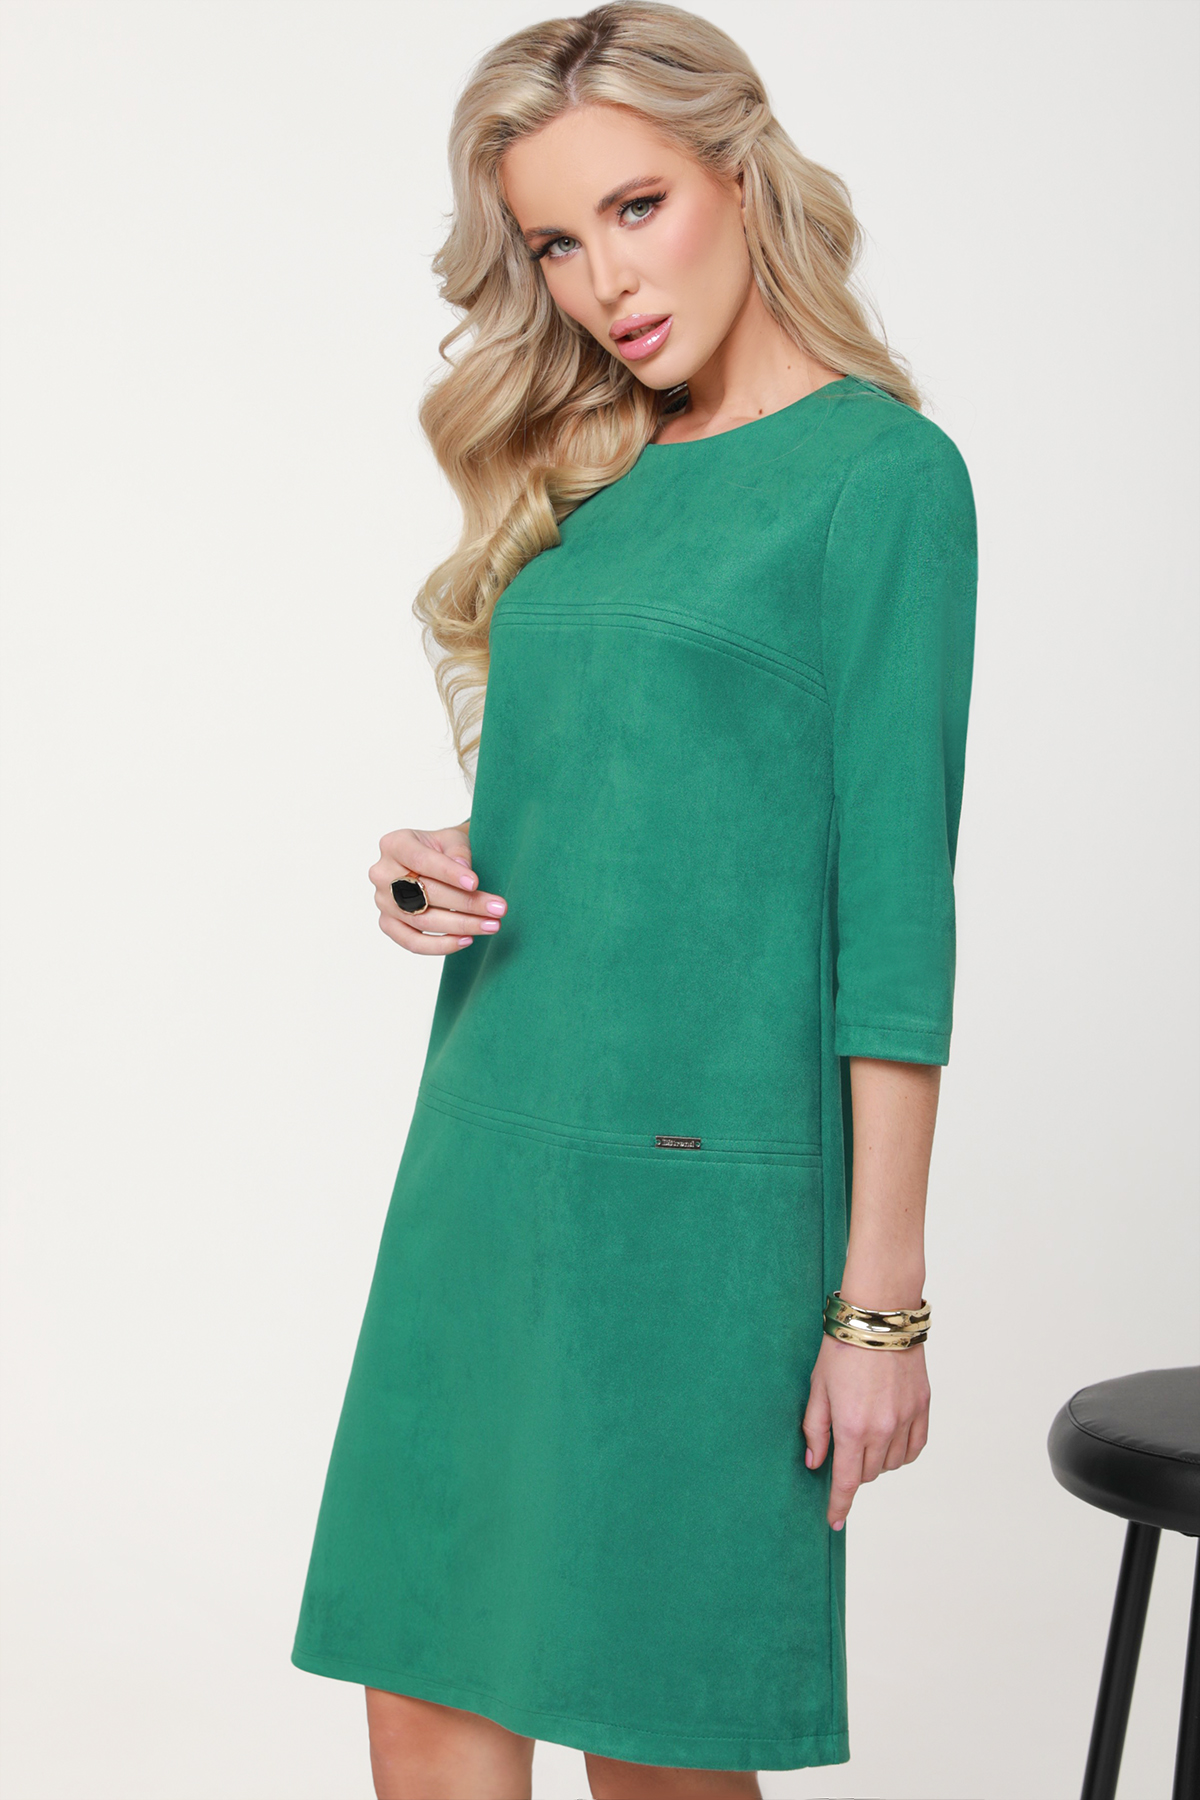 Платье женское DSTrend Модные веяния зеленое 44 RU